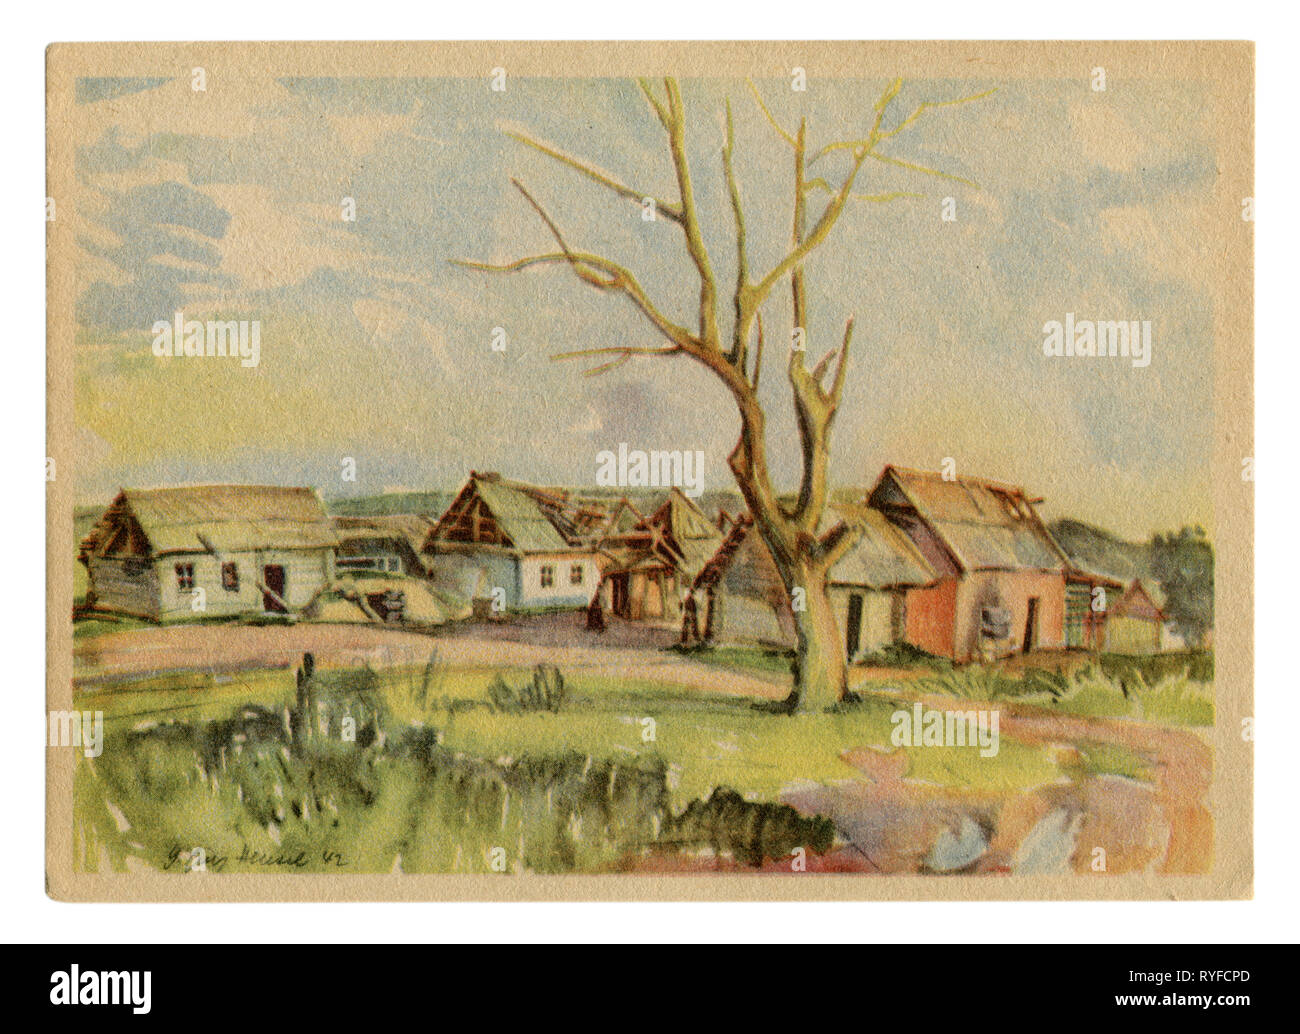 German Historical cartolina: Paesaggio del villaggio sovietico con distrutto capanne in legno con un unico albero secco. La Russia. il territorio occupato dalla reich Foto Stock